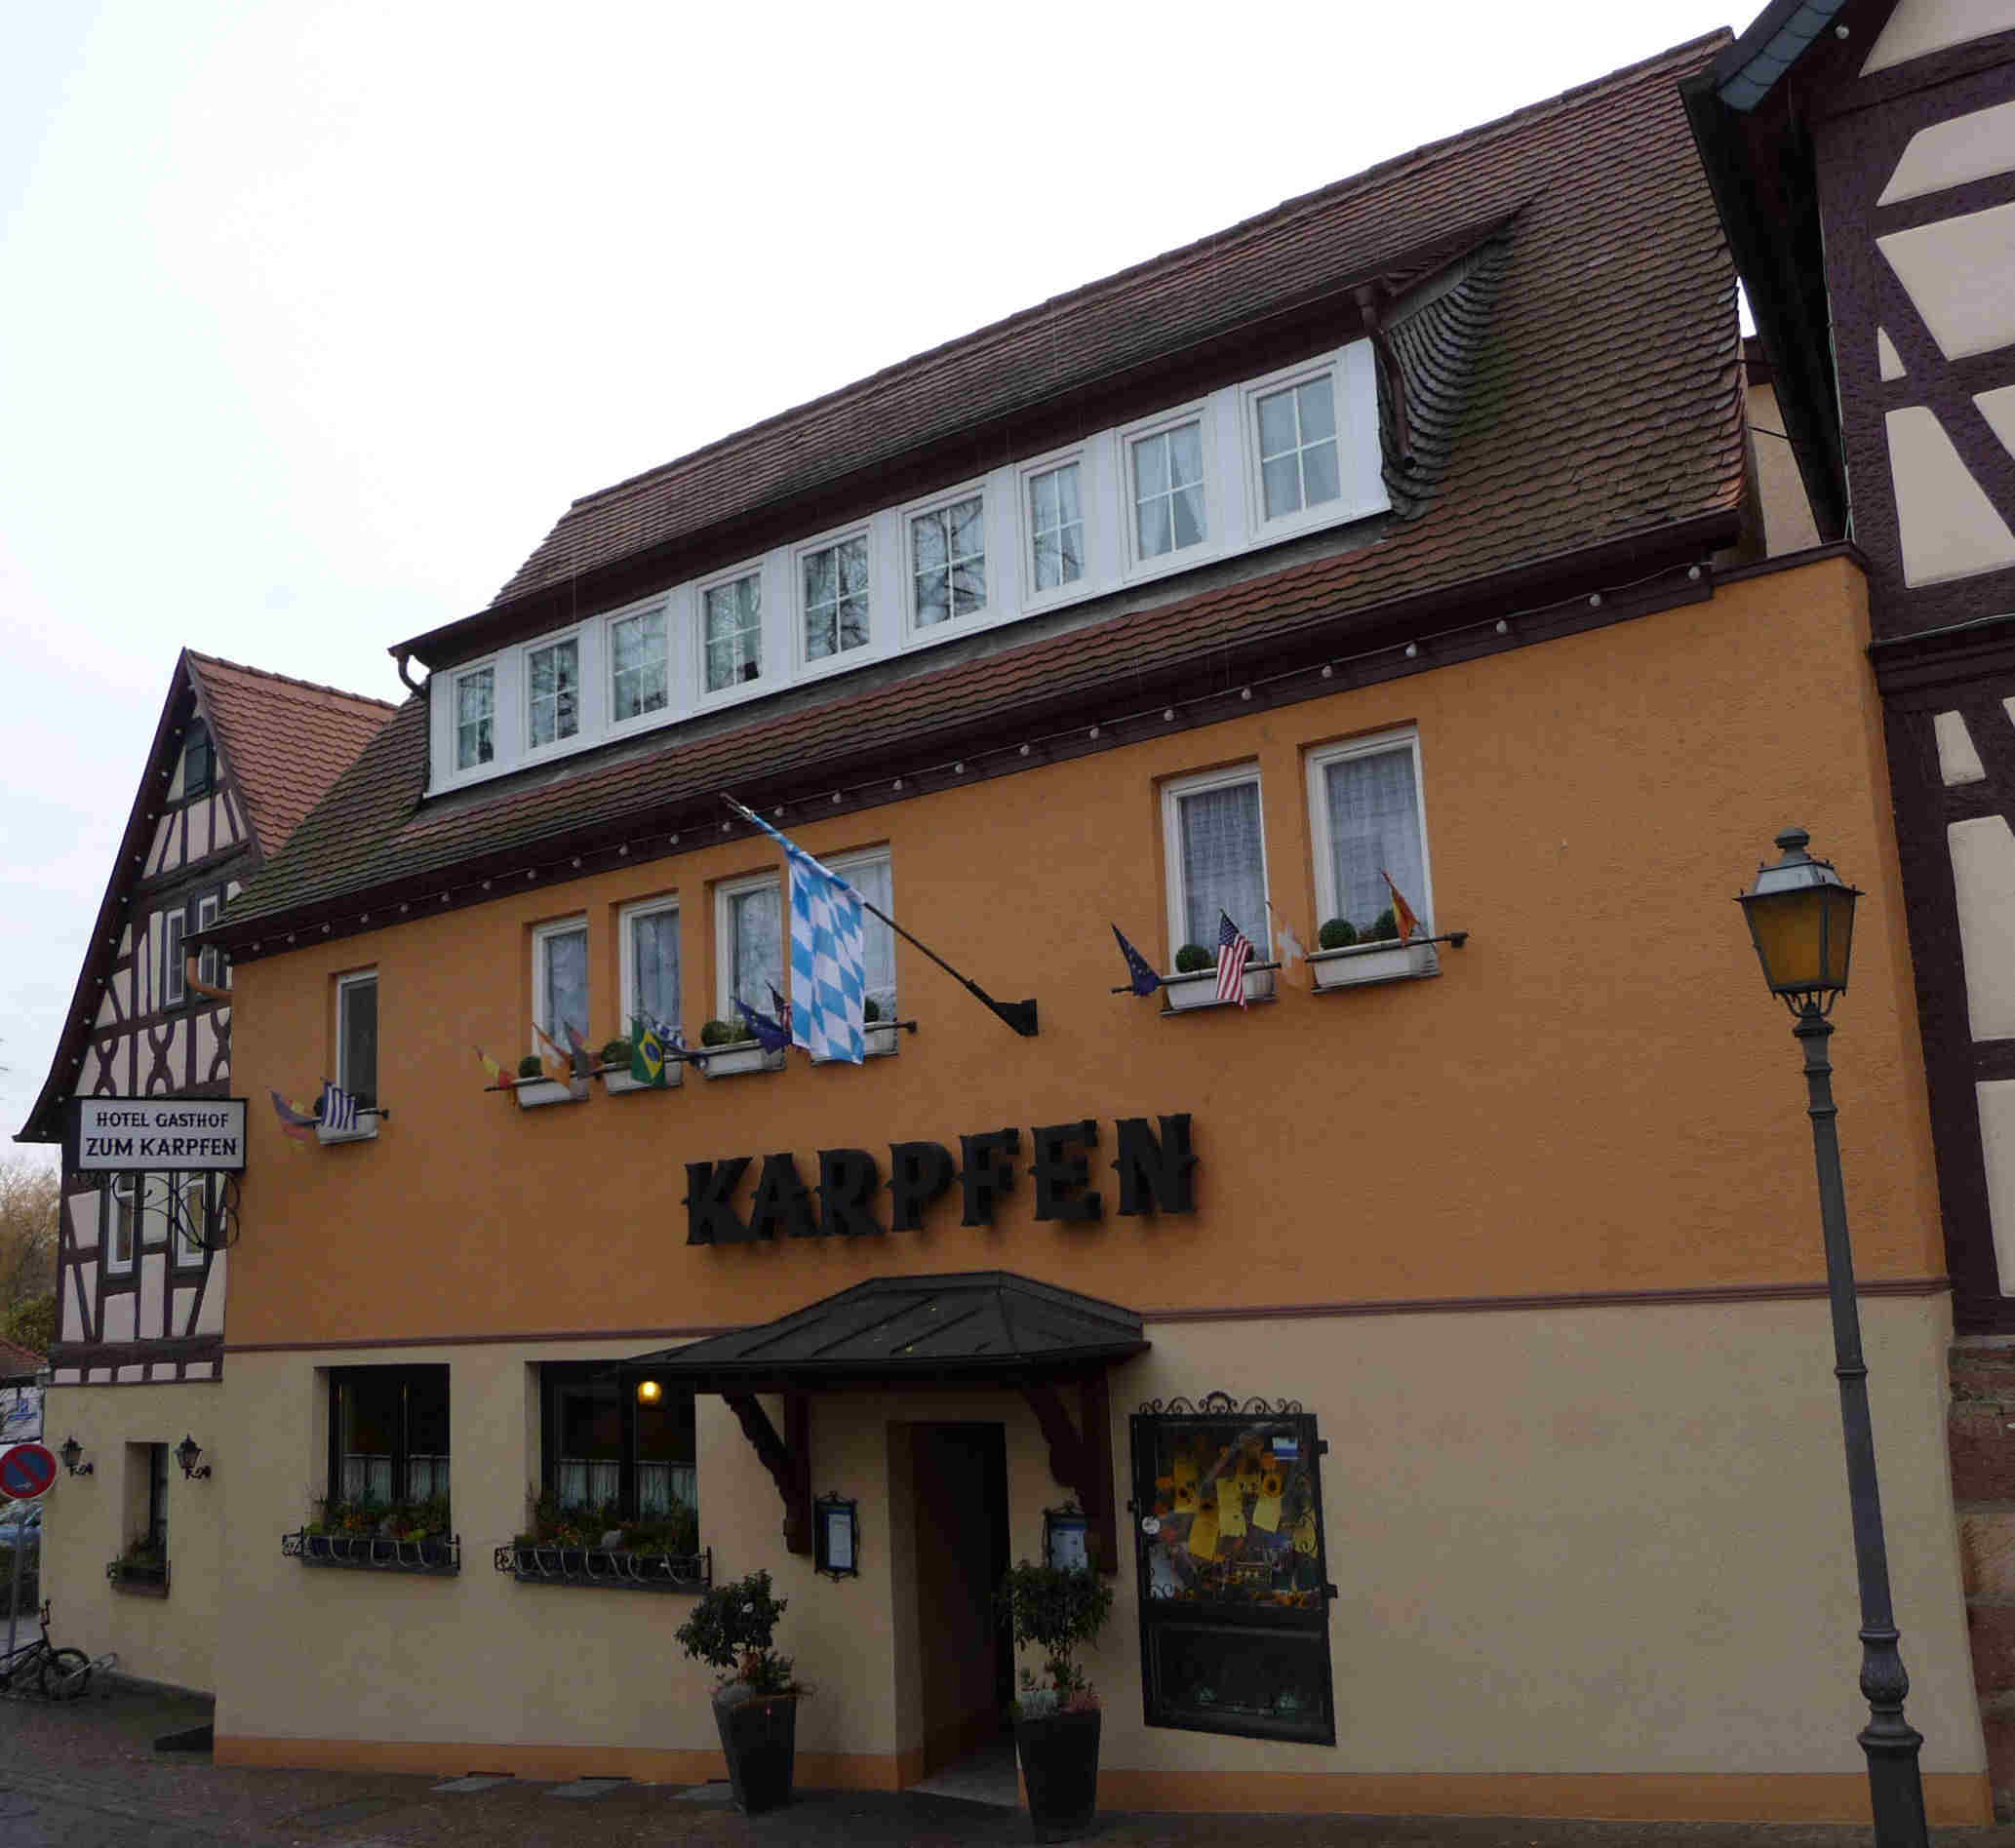 Karpfen 20091122_002